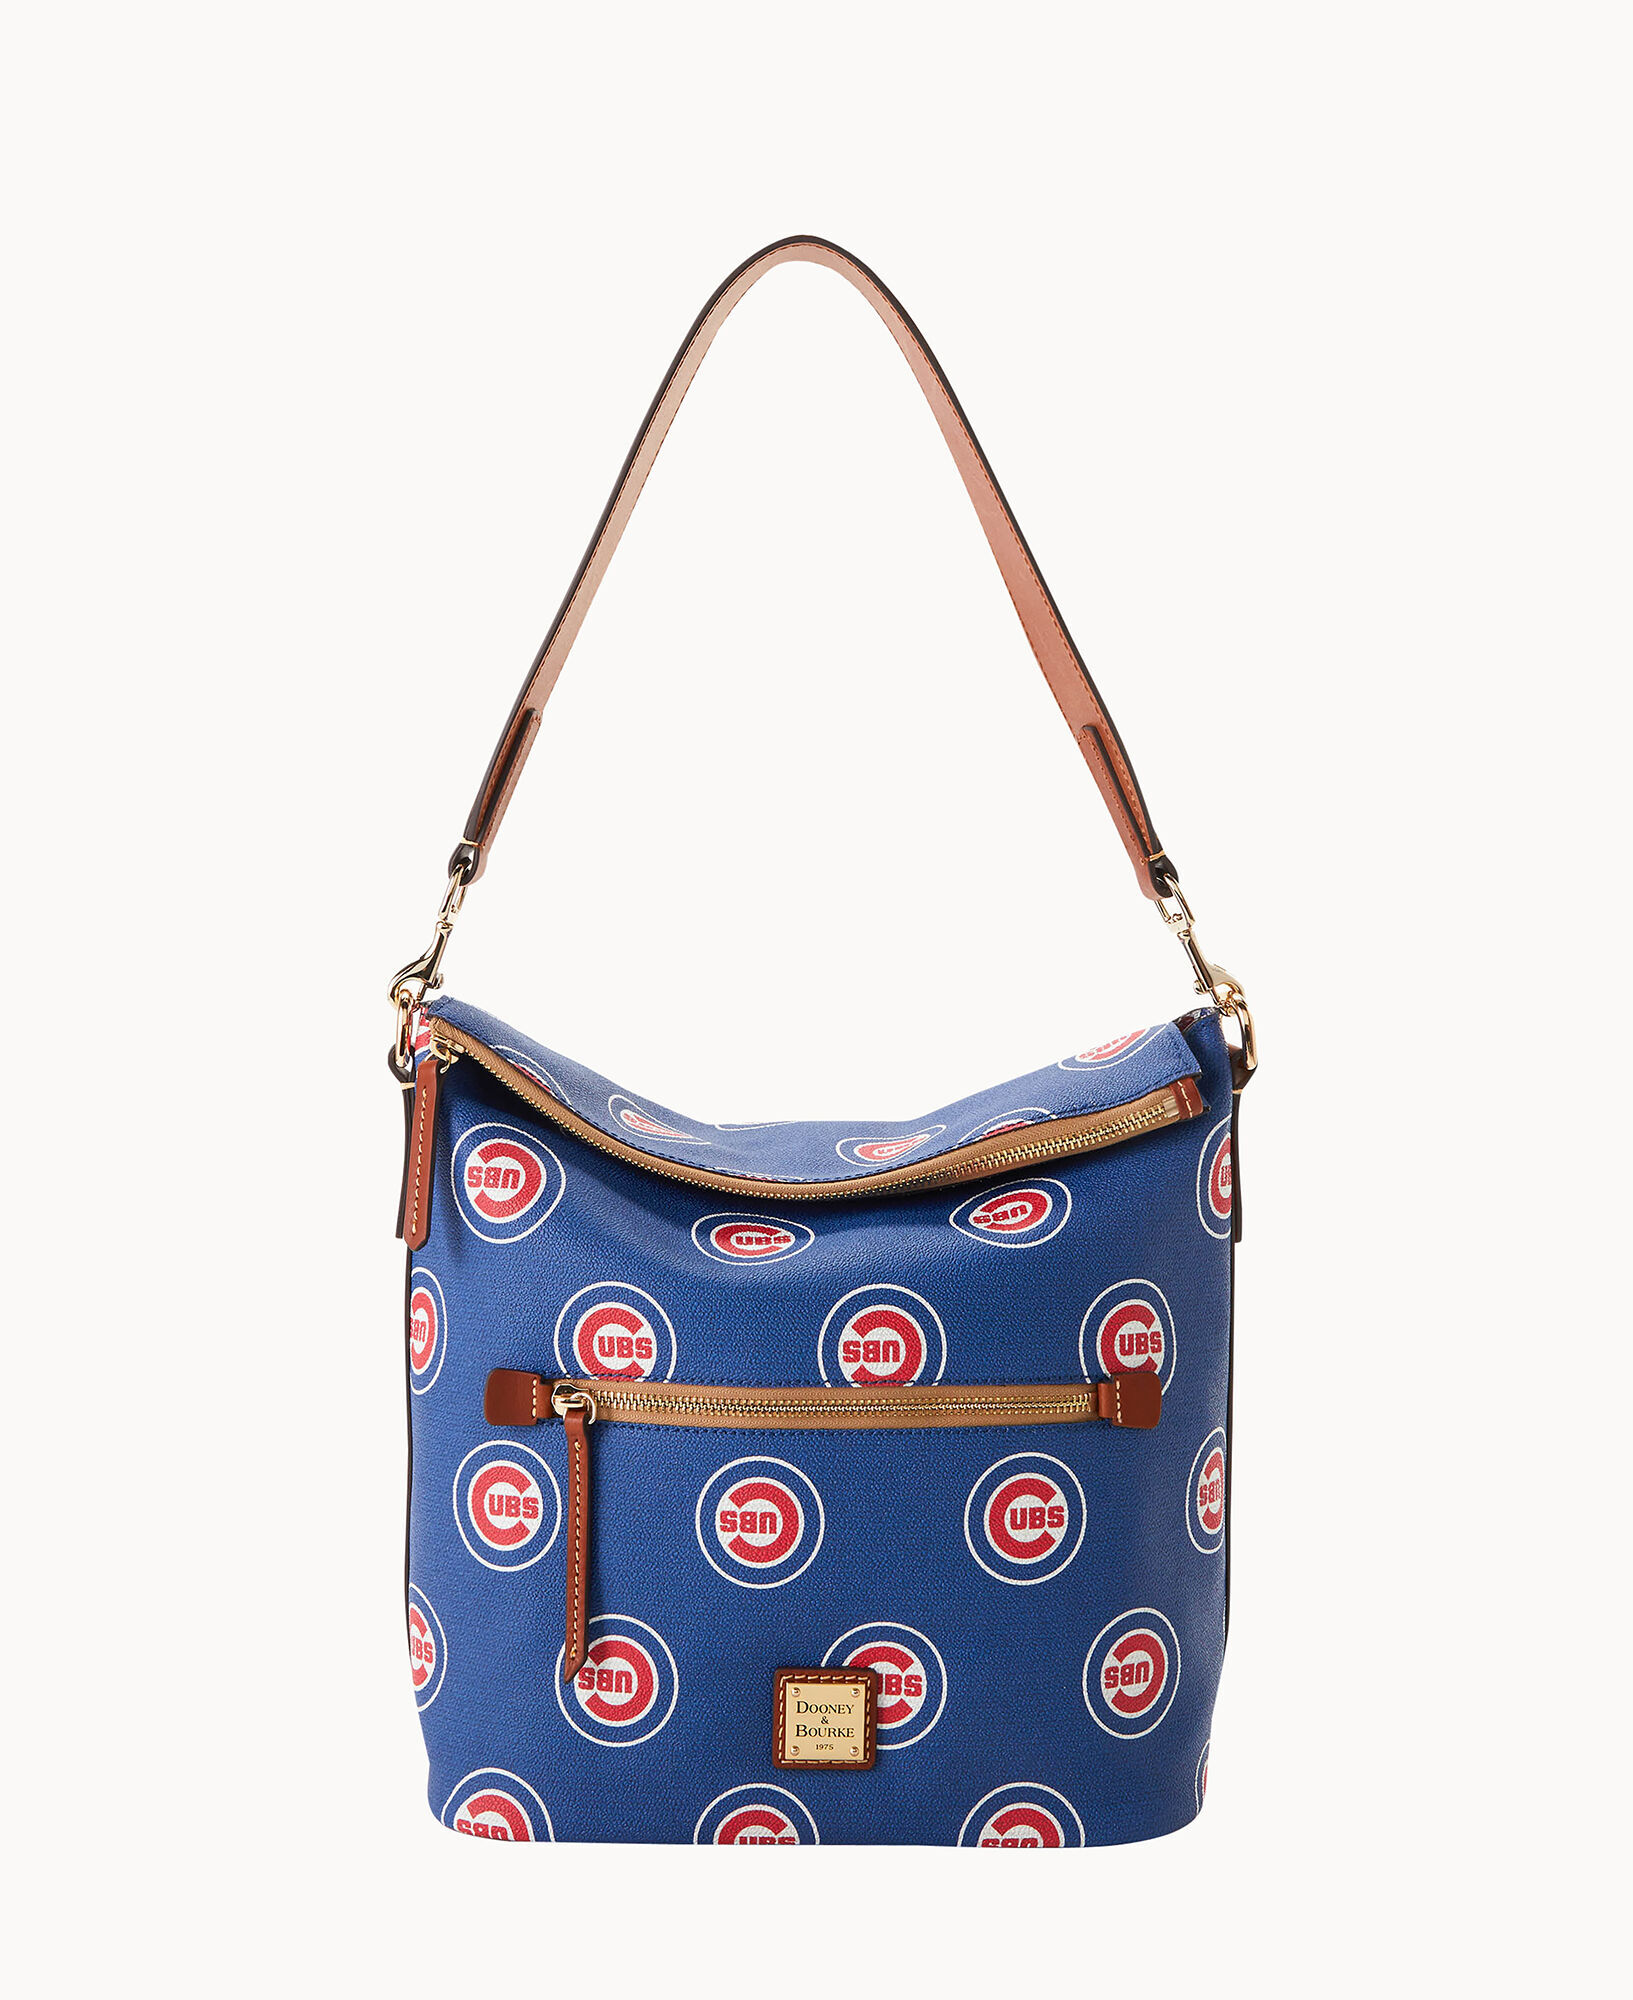 Dooney & Bourke Chicago Cubs Large Sac Shoulder Bag